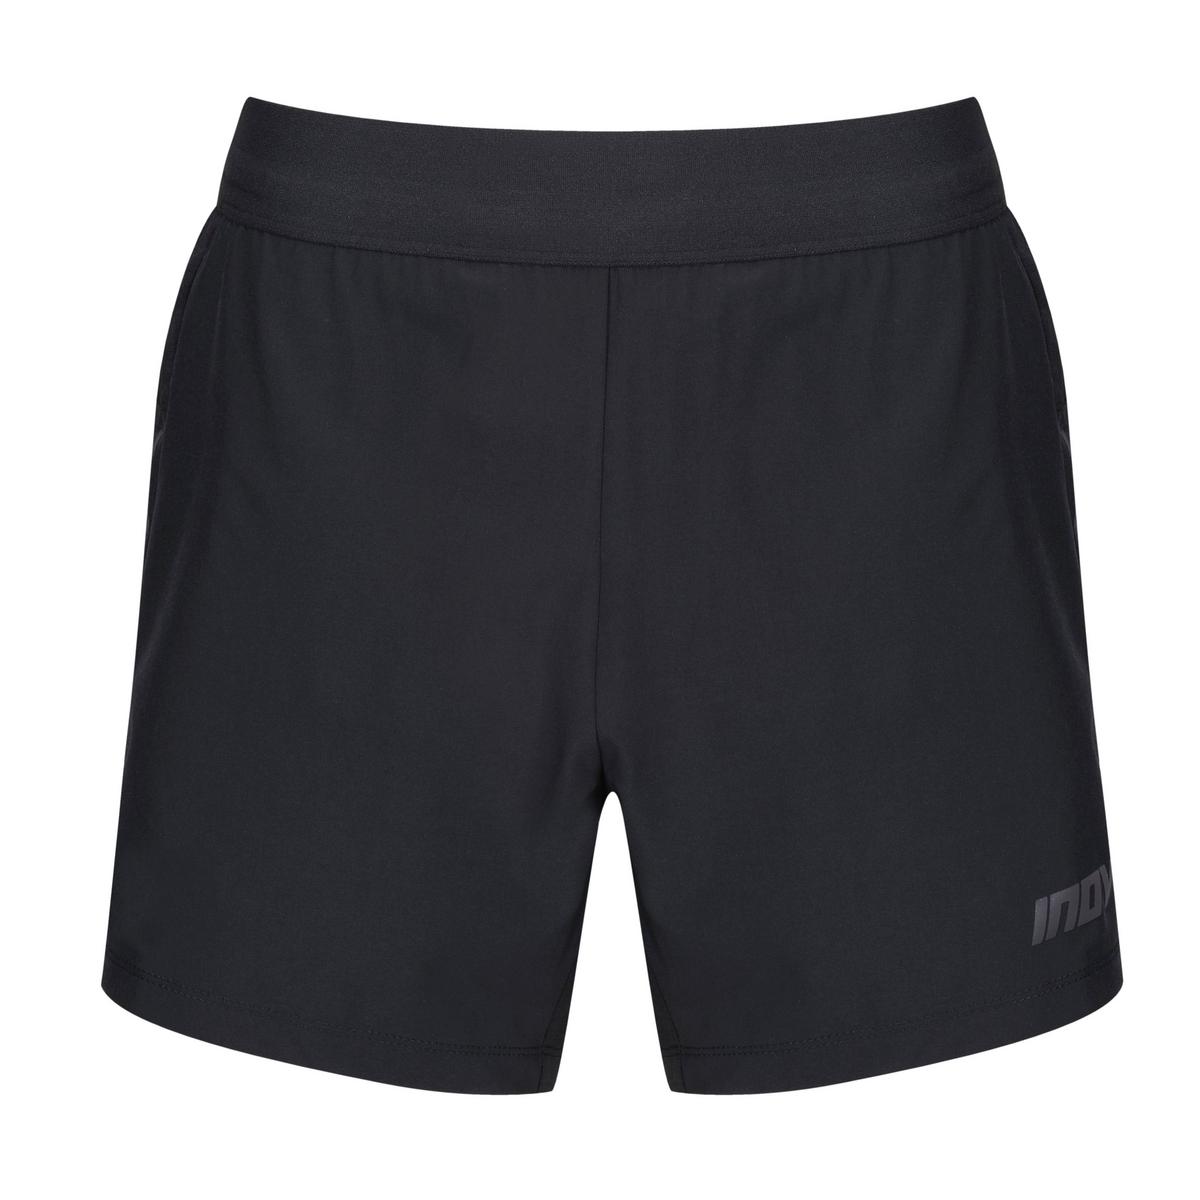 Inov-8 Men's Race Elite 5 Inch Shorts- Black